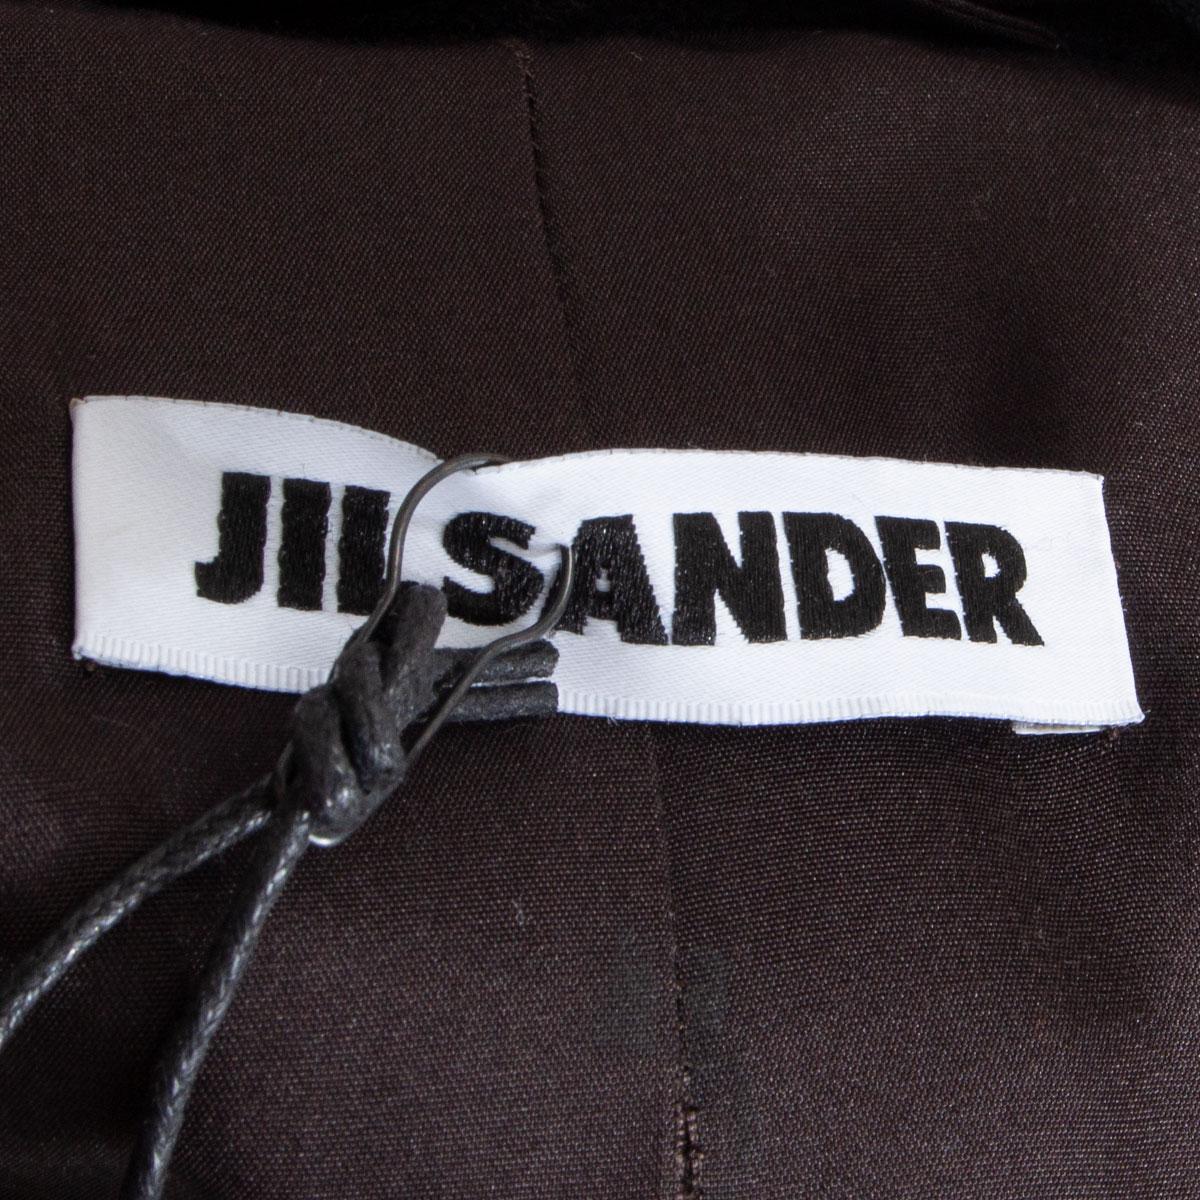 Black JIL SANDER black cashmere DOUBLE BREASTED FUR COLLAR Coat Jacket 38 M